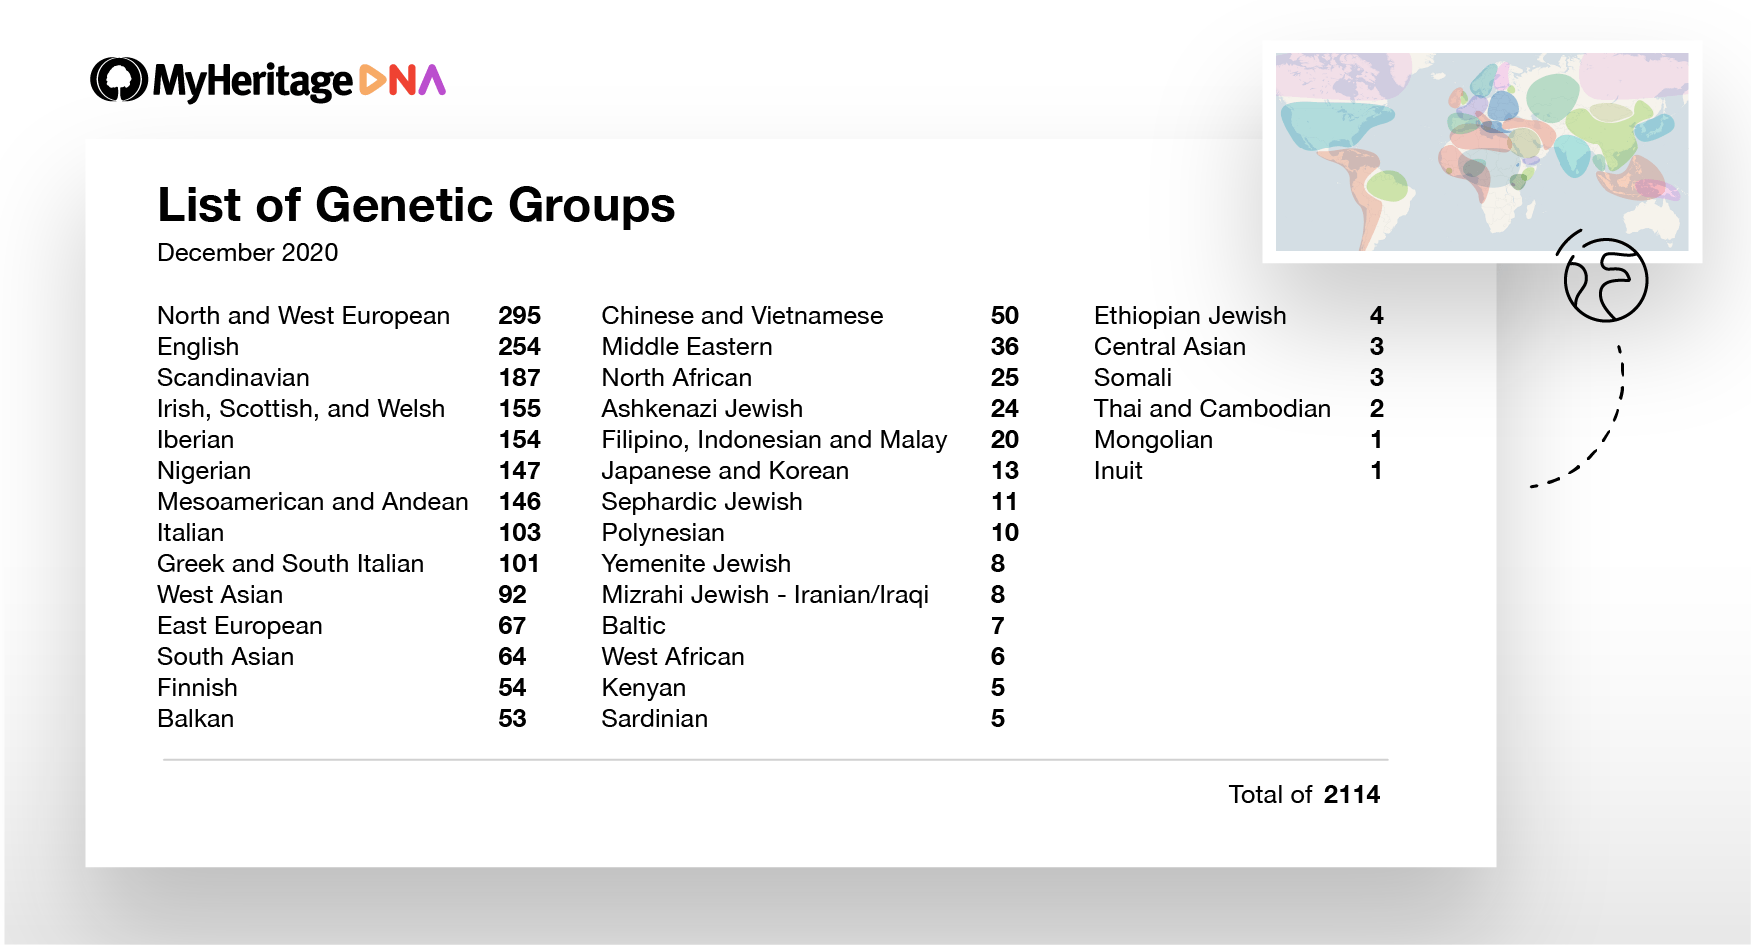 Liste over antall genetiske grupper som er tilgjengelige i dag, under toppnivå-etnisitetene de som oftest faller inn under. For eksempel er det 103 genetiske grupper som hovedsakelig er italienske og 54 genetiske grupper som er finske (klikk for å zoome).